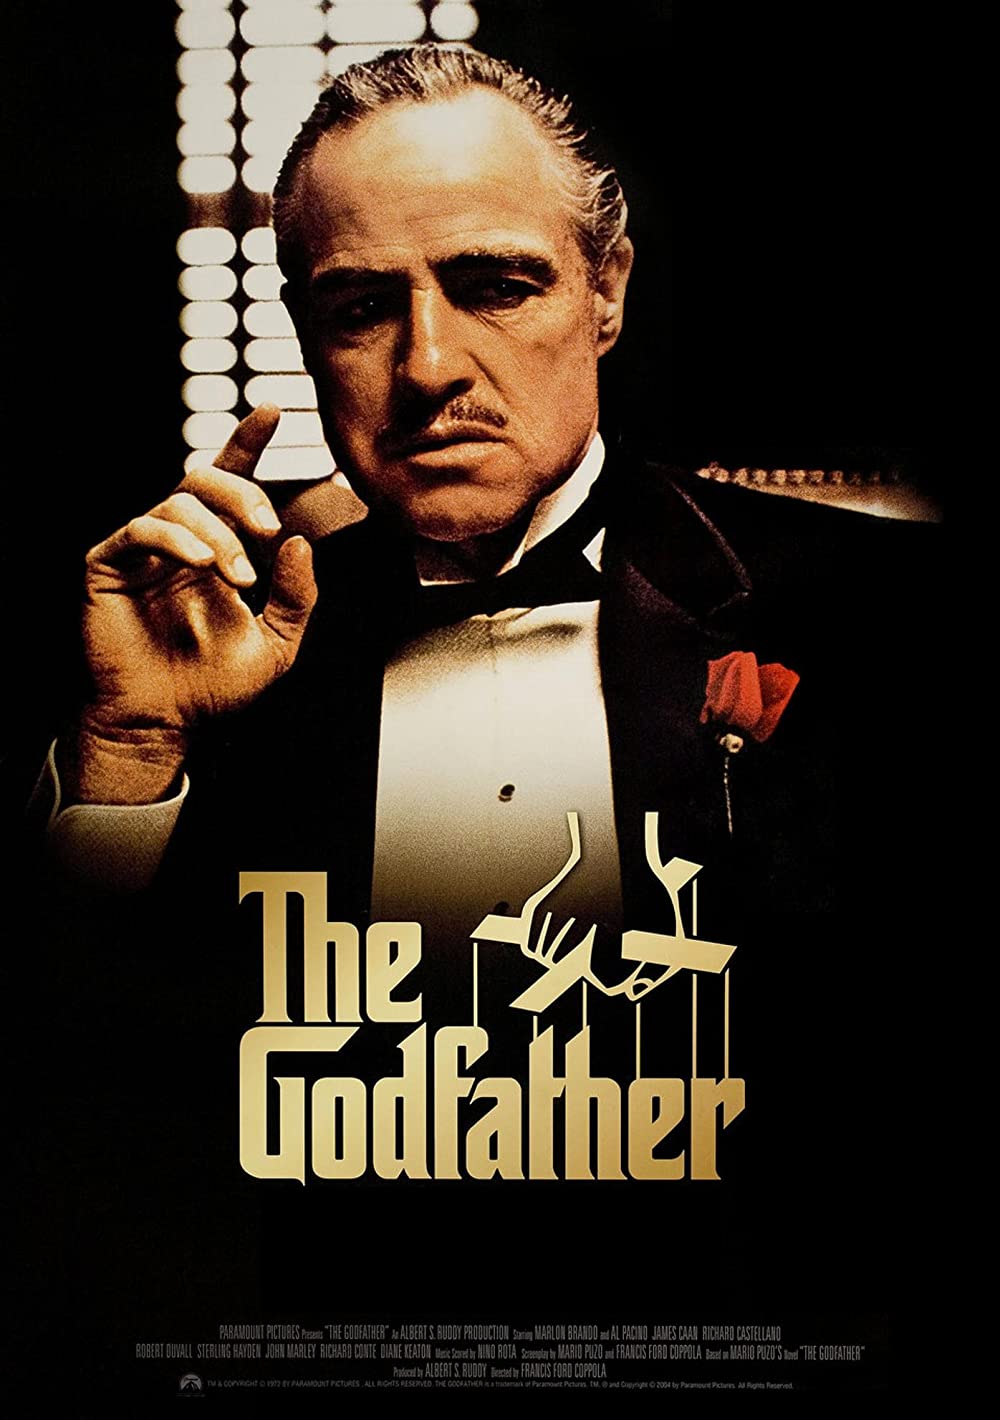 The Godfather (1972) Best Italian Mafia Movies to Add in Your Watchlist